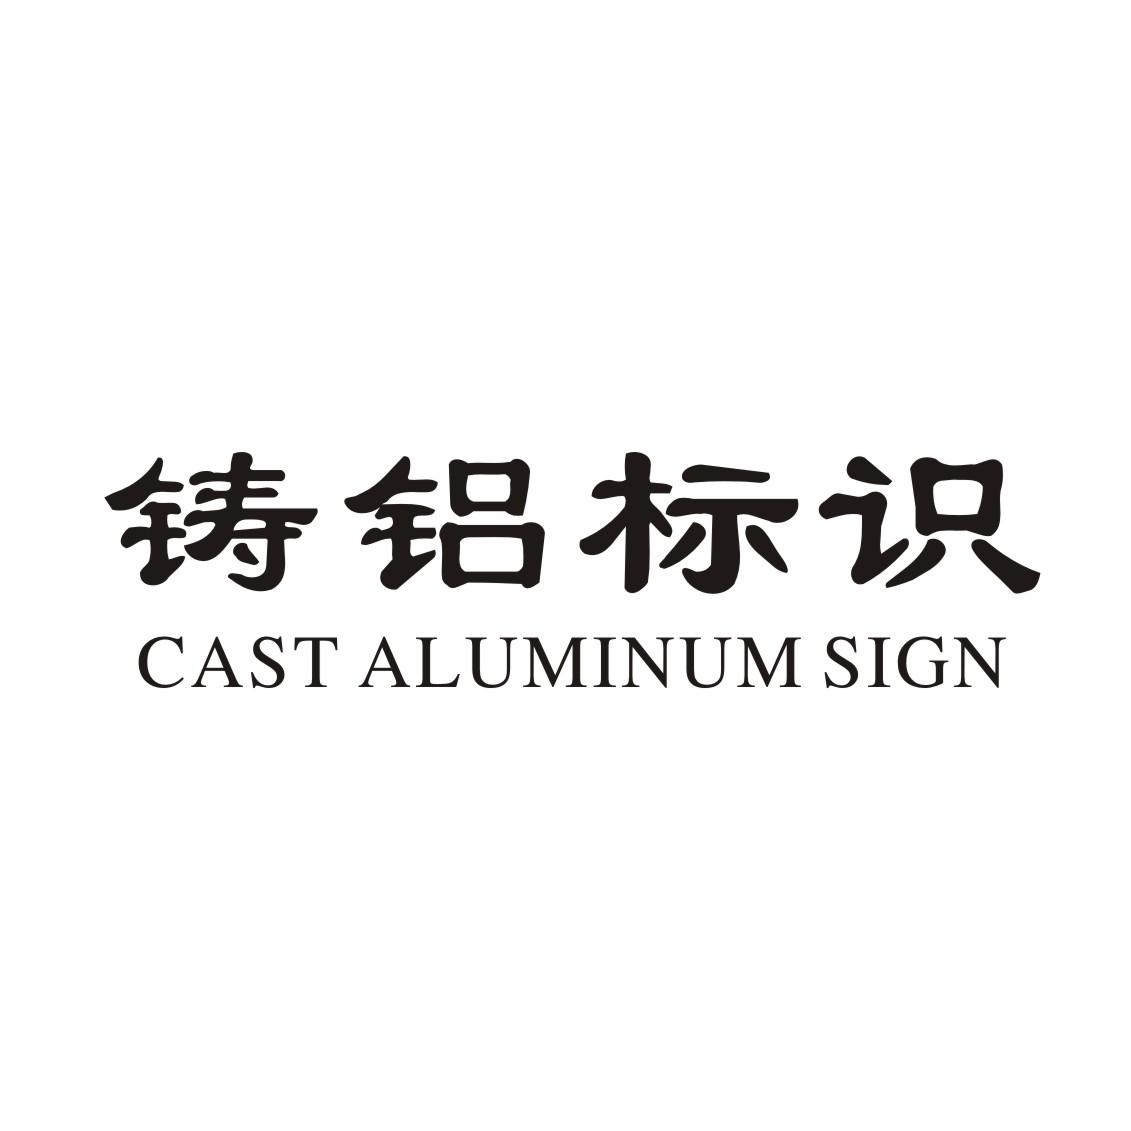 铸铝标识 CAST ALUMINUM SIGNlogo